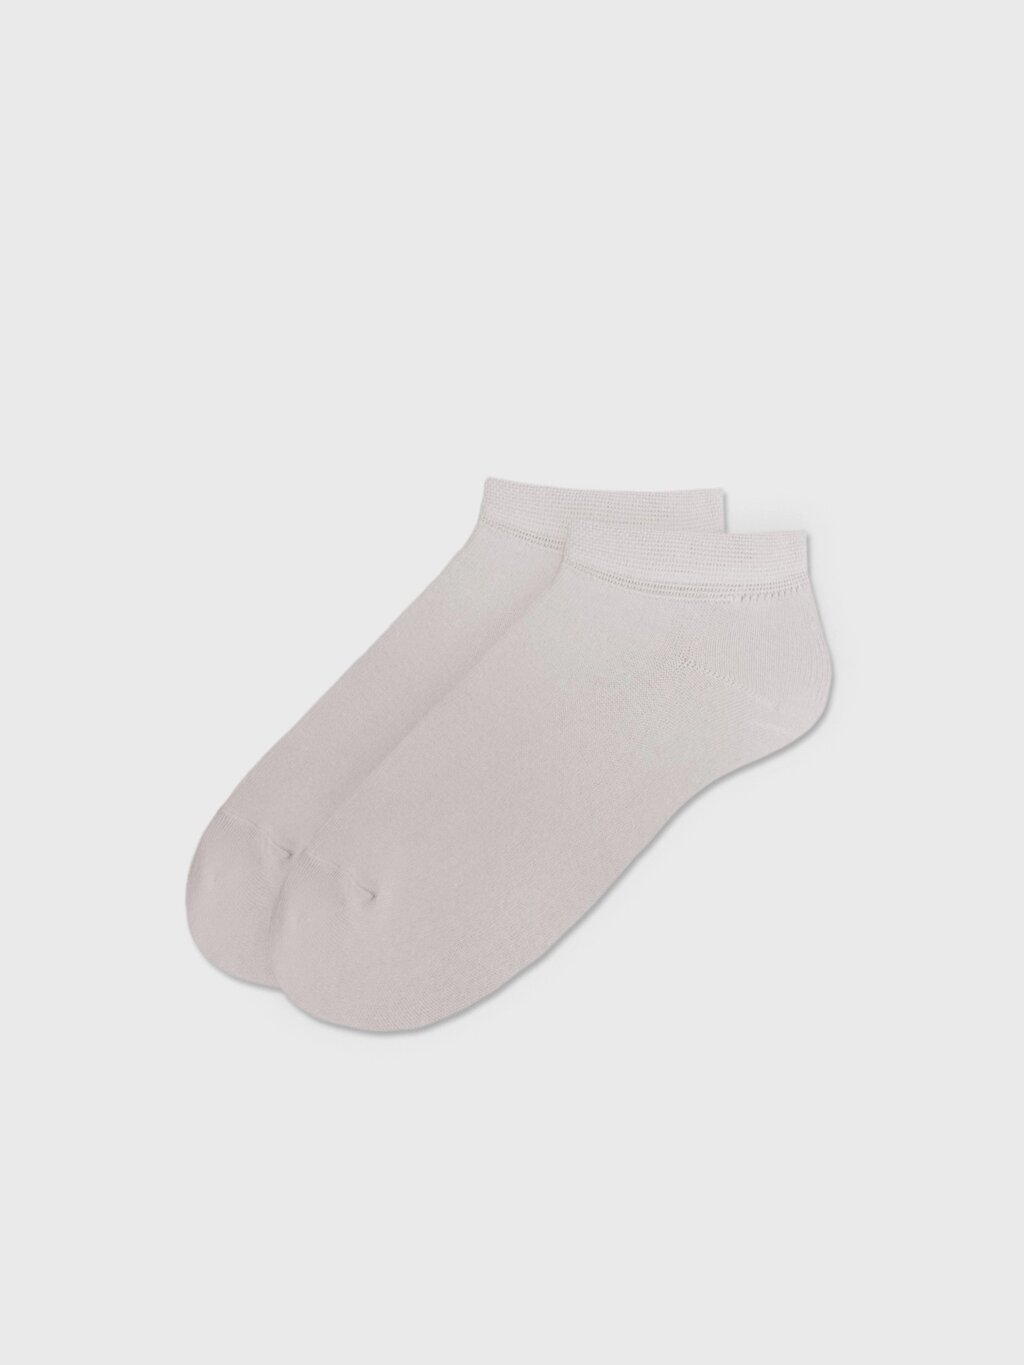 Носки укороченные серые (38-40) от компании Admi - фото 1